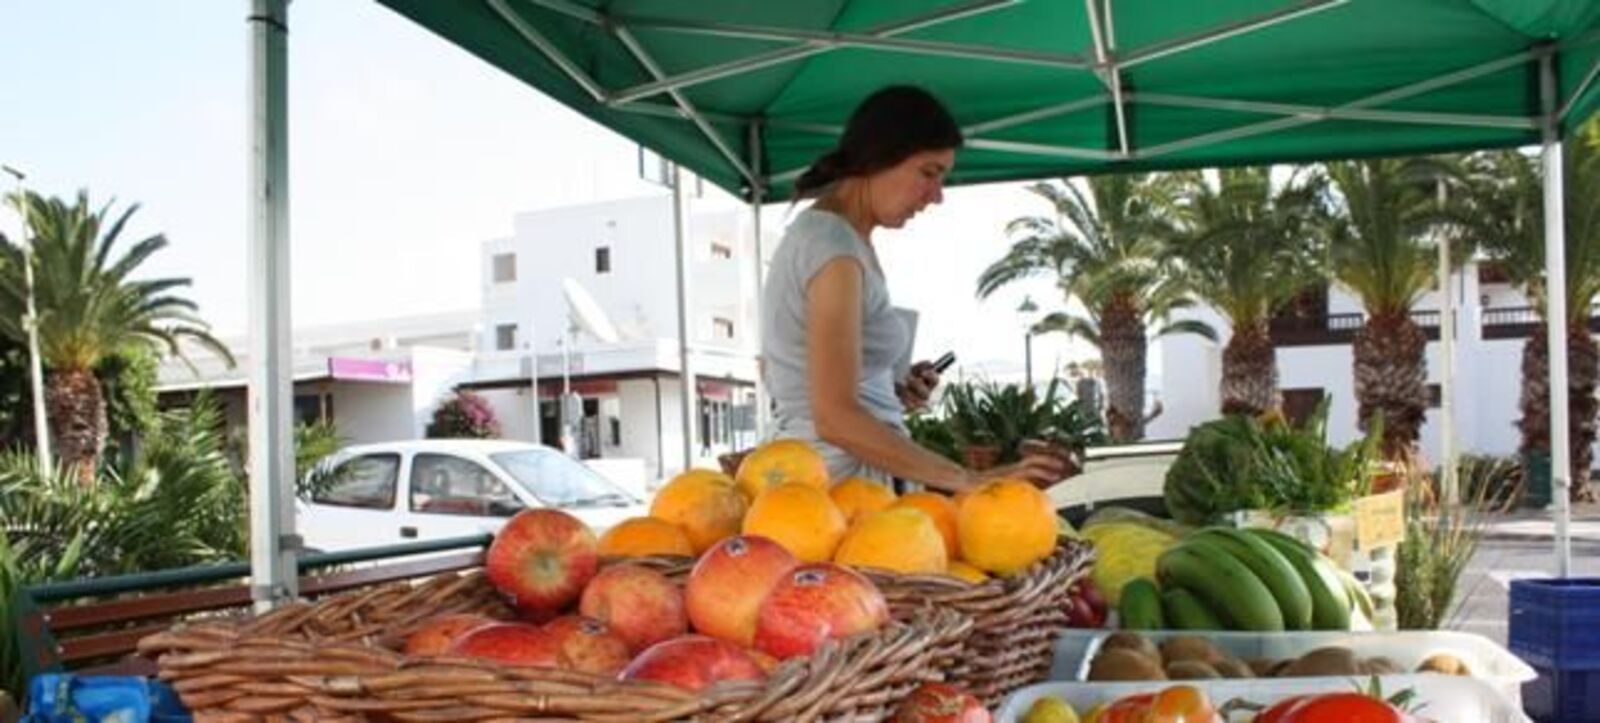 Se afianza el mercado agrícola del Jablillo en Costa Teguise